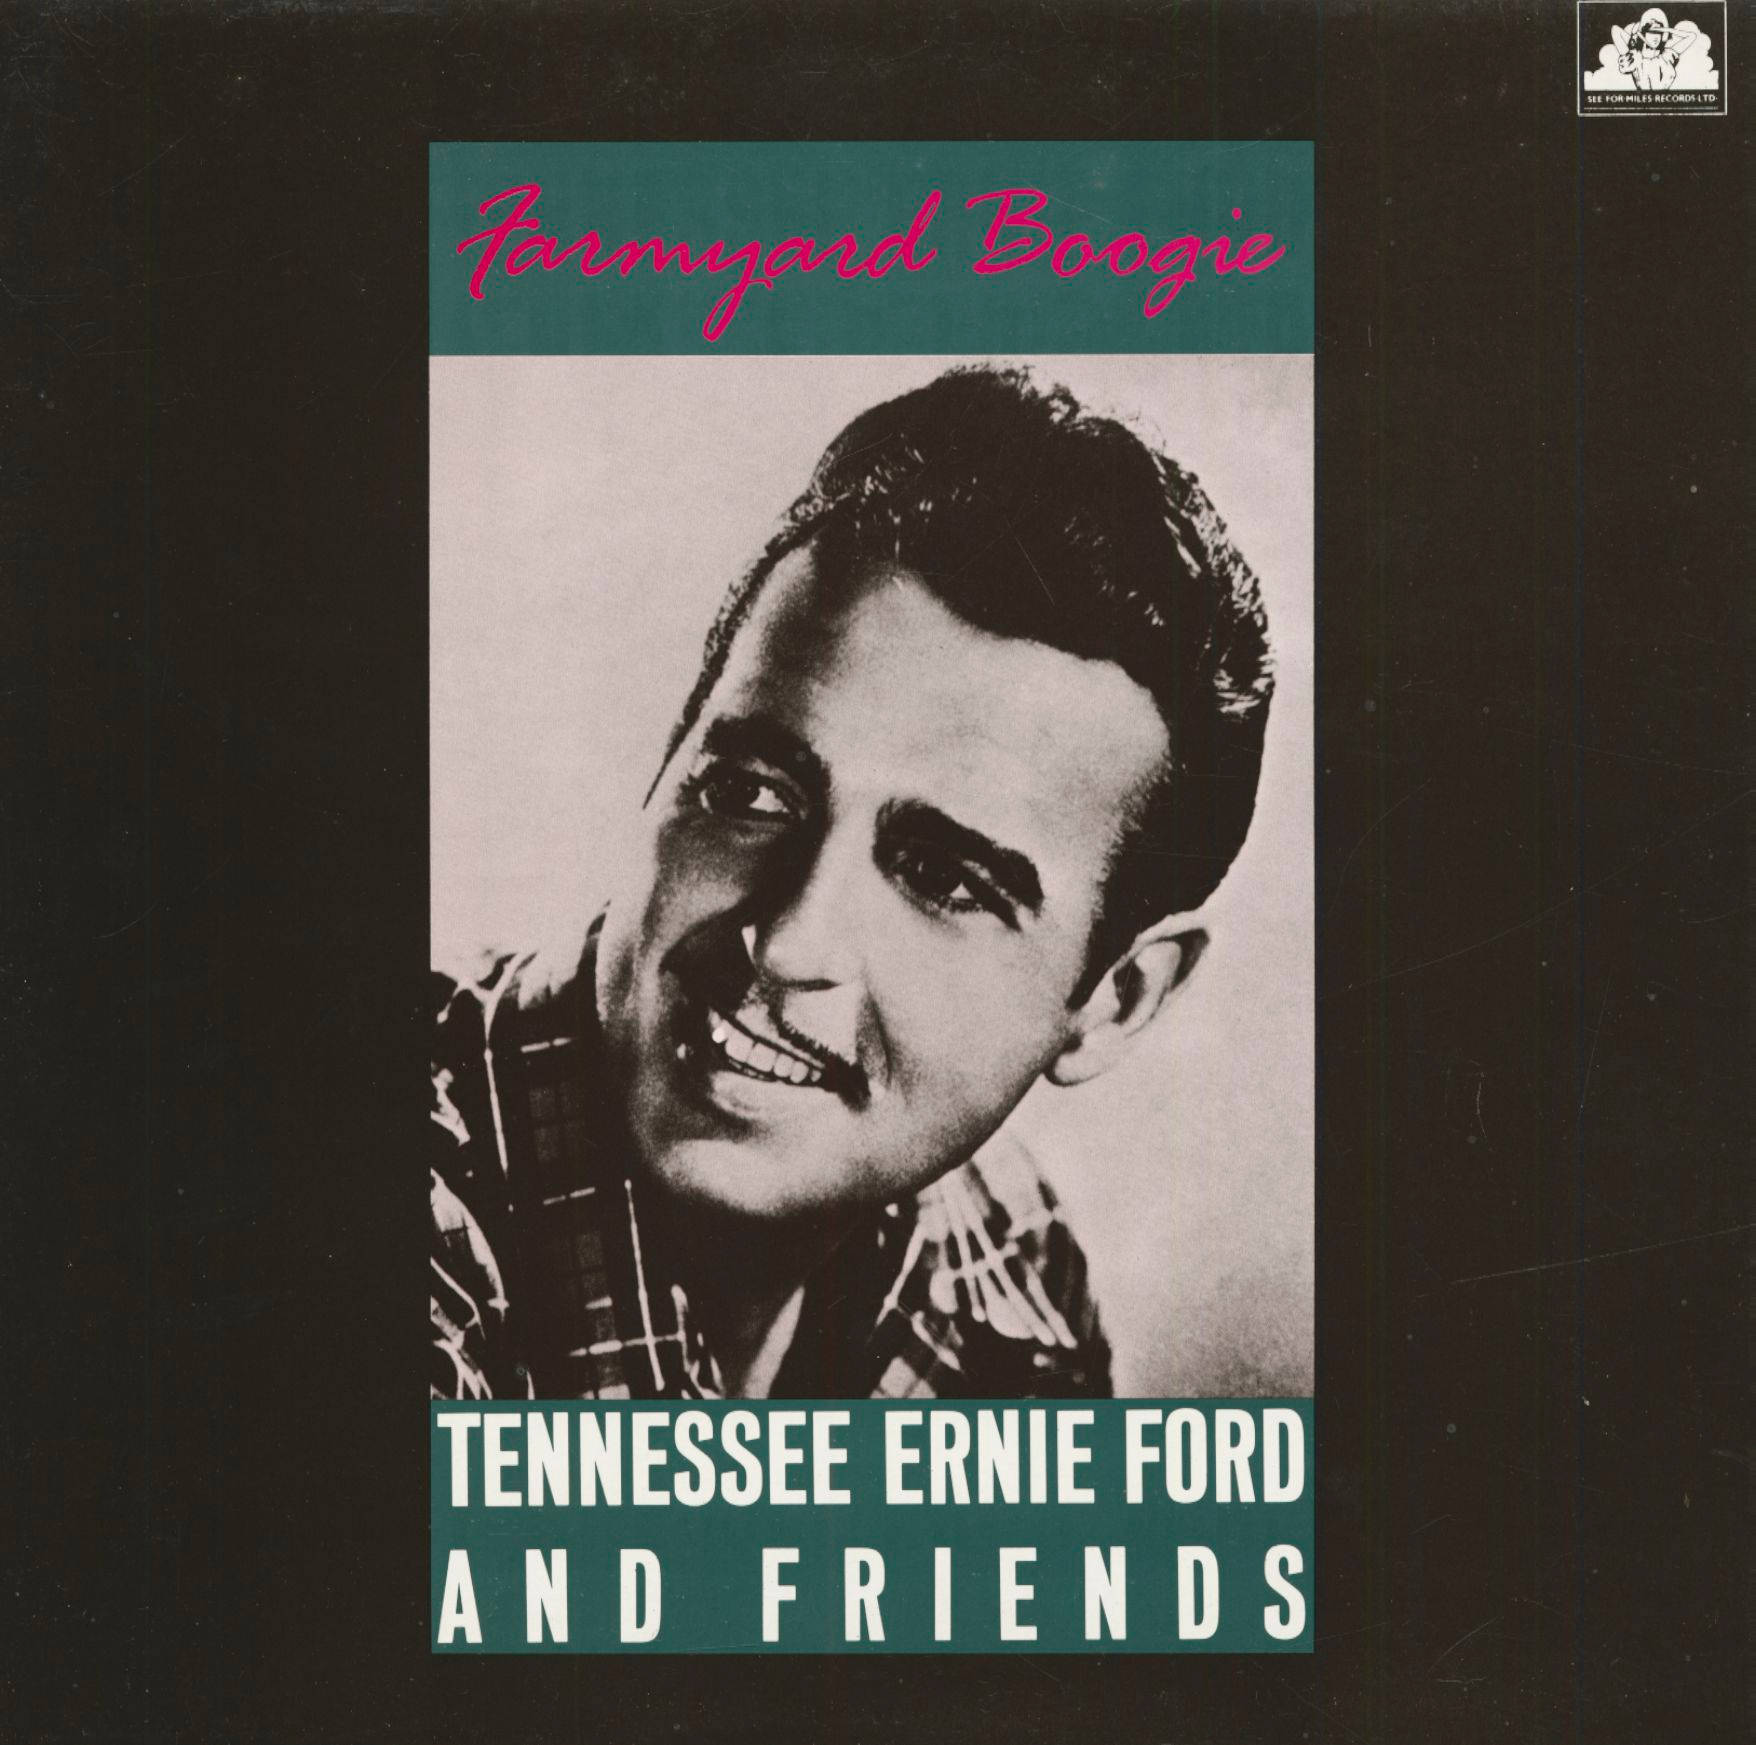 Tennessee Ernie Ford Farmyard Boogie Album Wallpaper